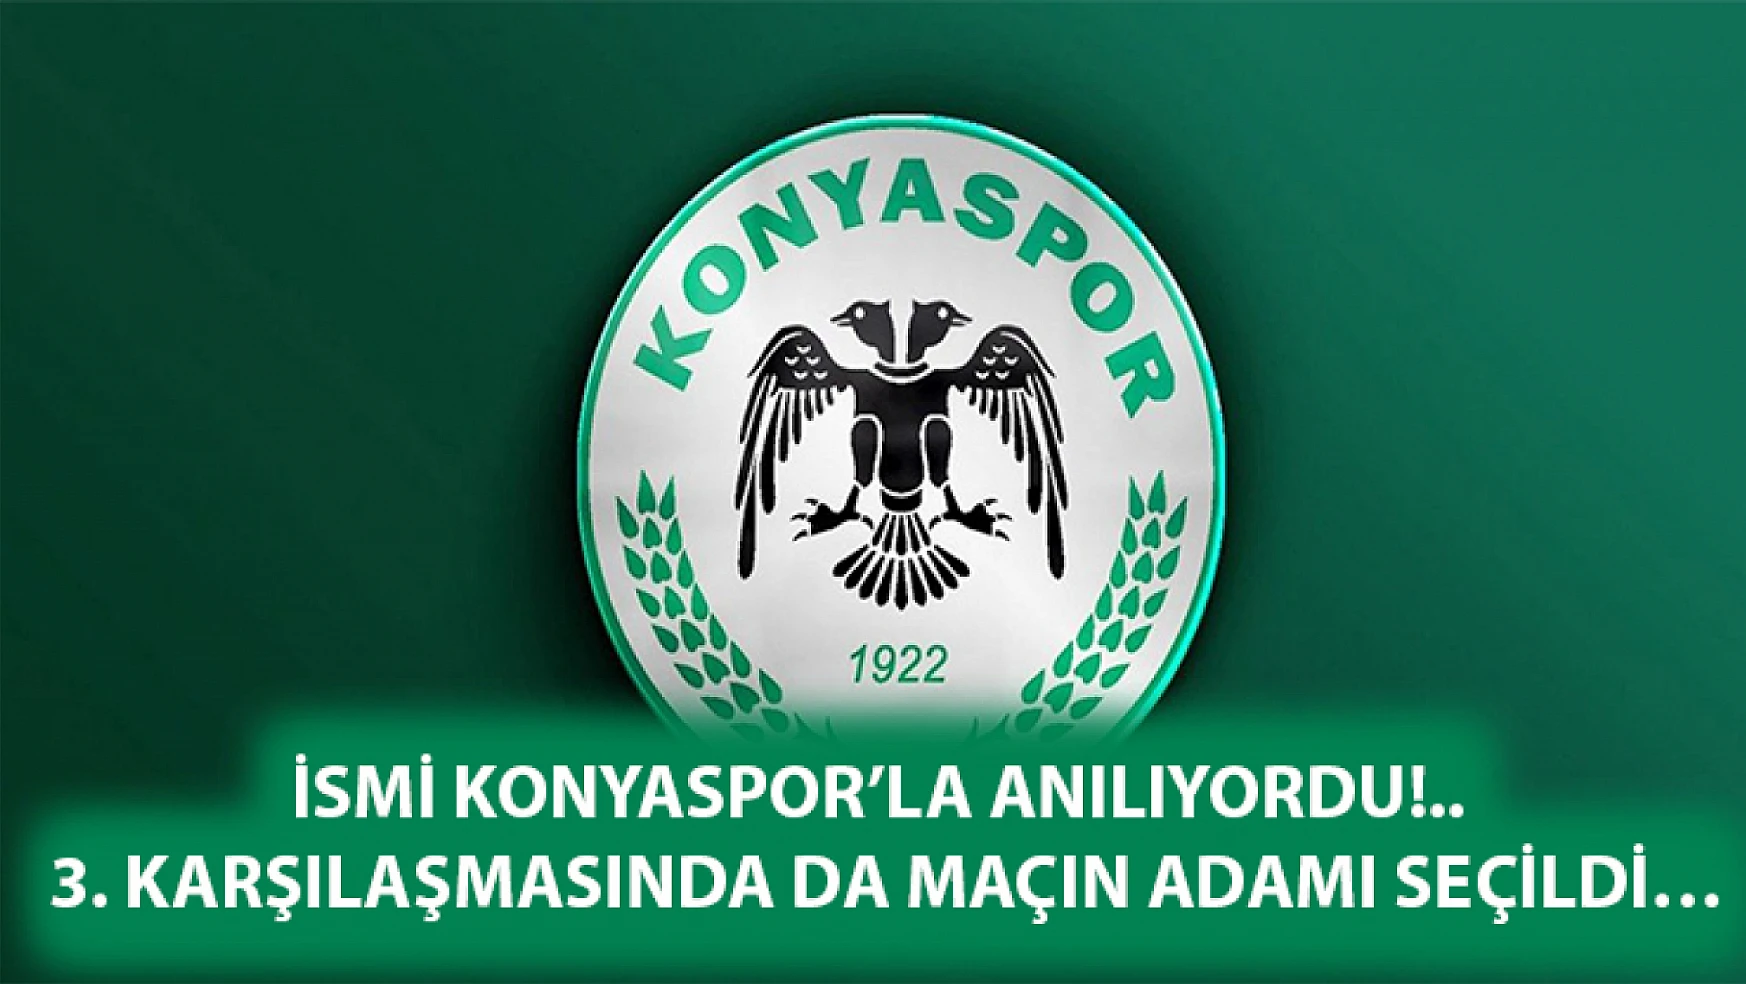 İsmi Konyaspor'la anılıyordu!.. 3. Karşılaşmasında da maçın adamı seçildi…